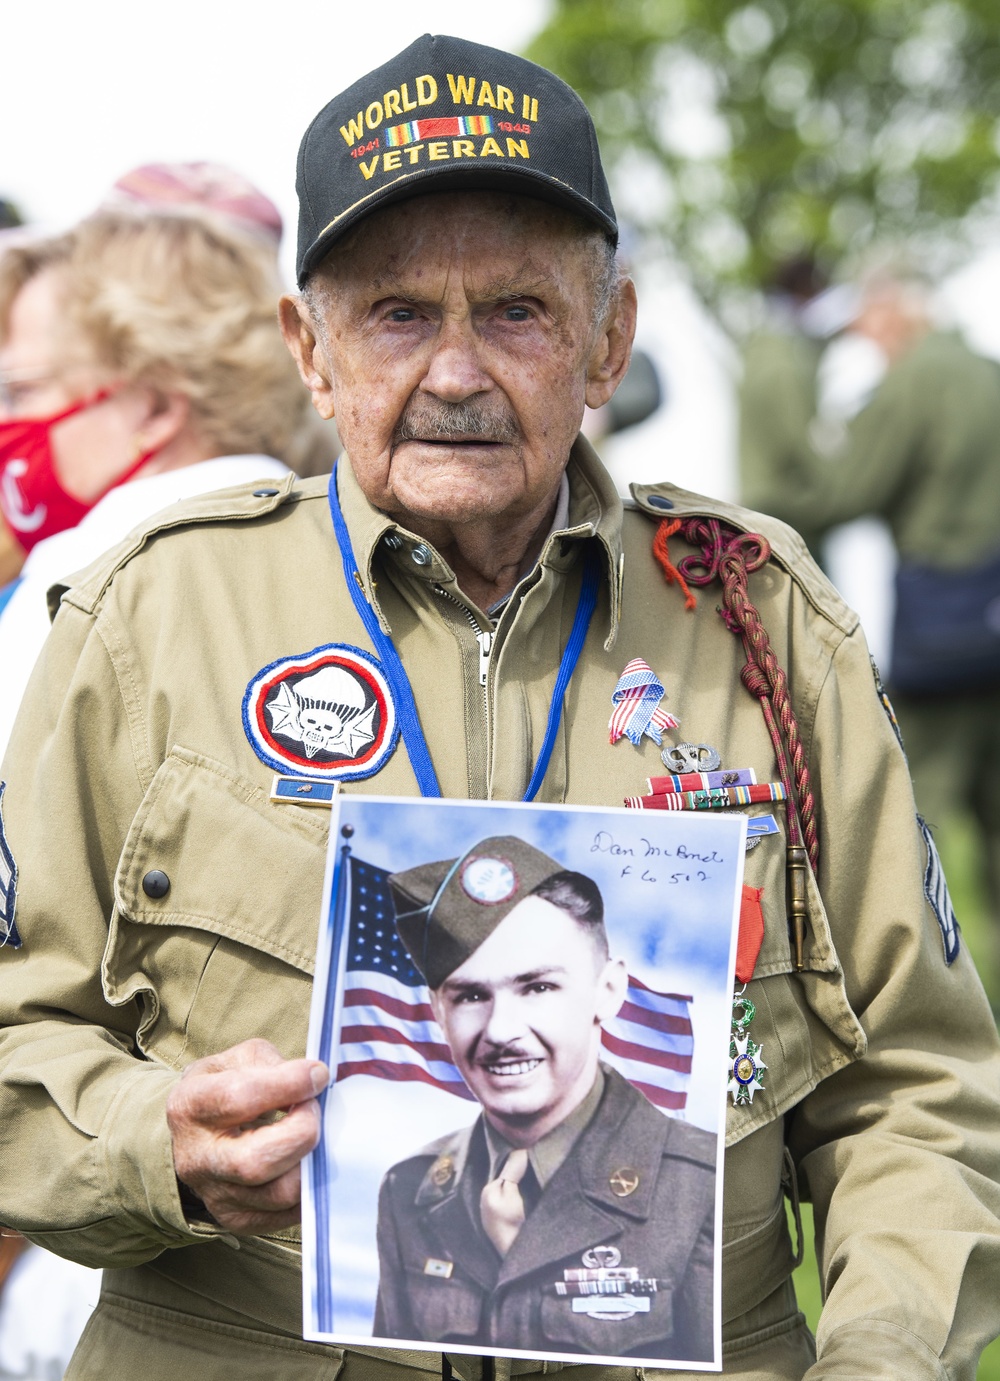 WWII Veteran Jim “Pee Wee” Martin